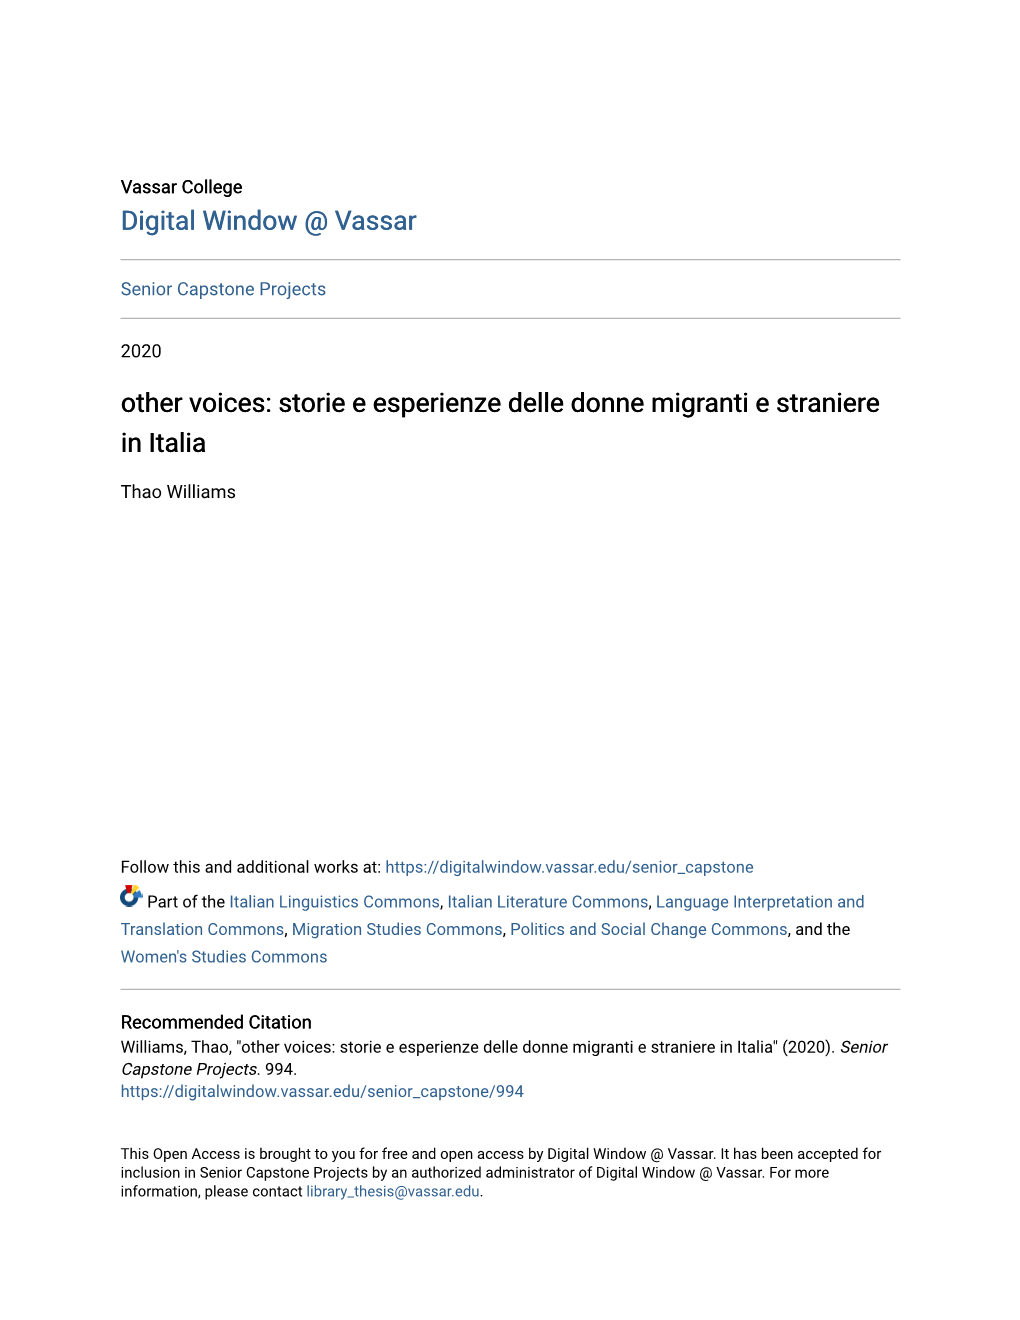 Other Voices: Storie E Esperienze Delle Donne Migranti E Straniere in Italia